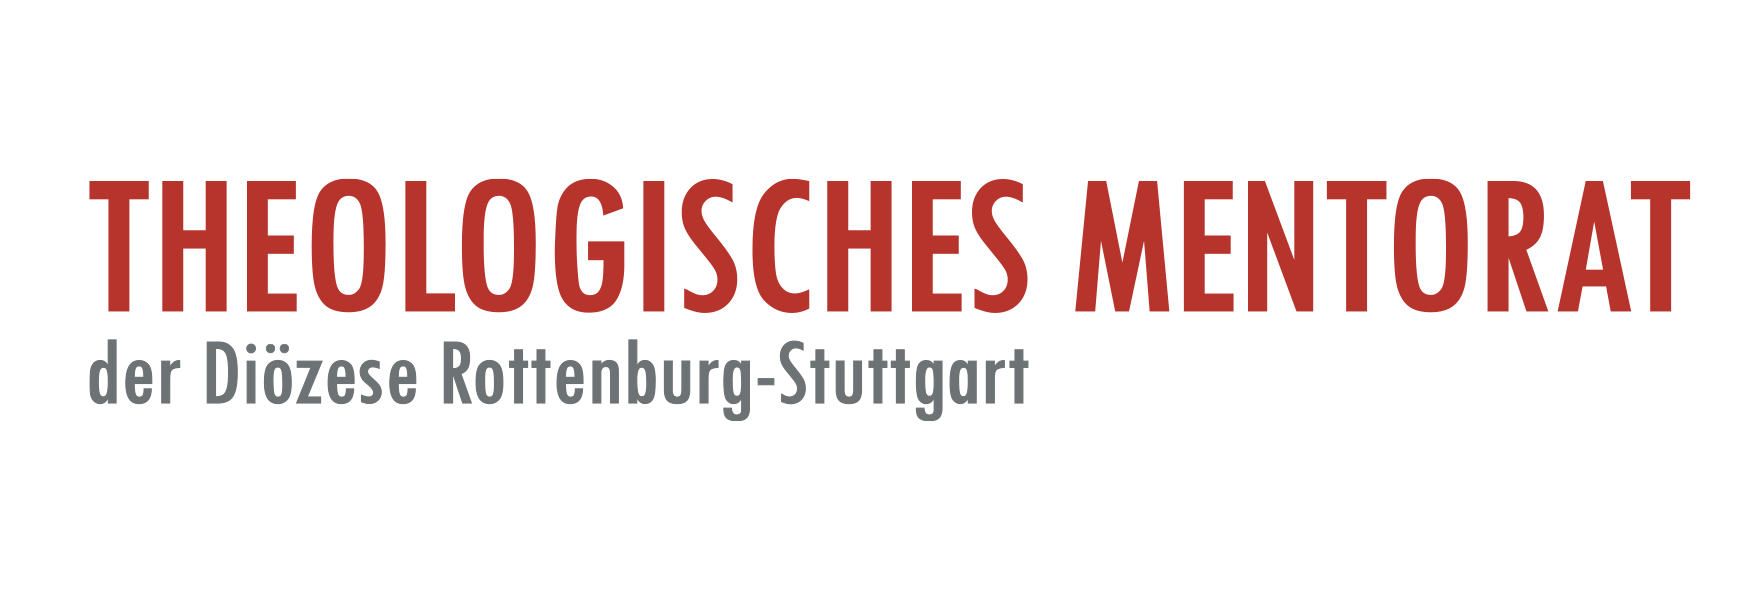 Theologisches Mentorat Tübingen